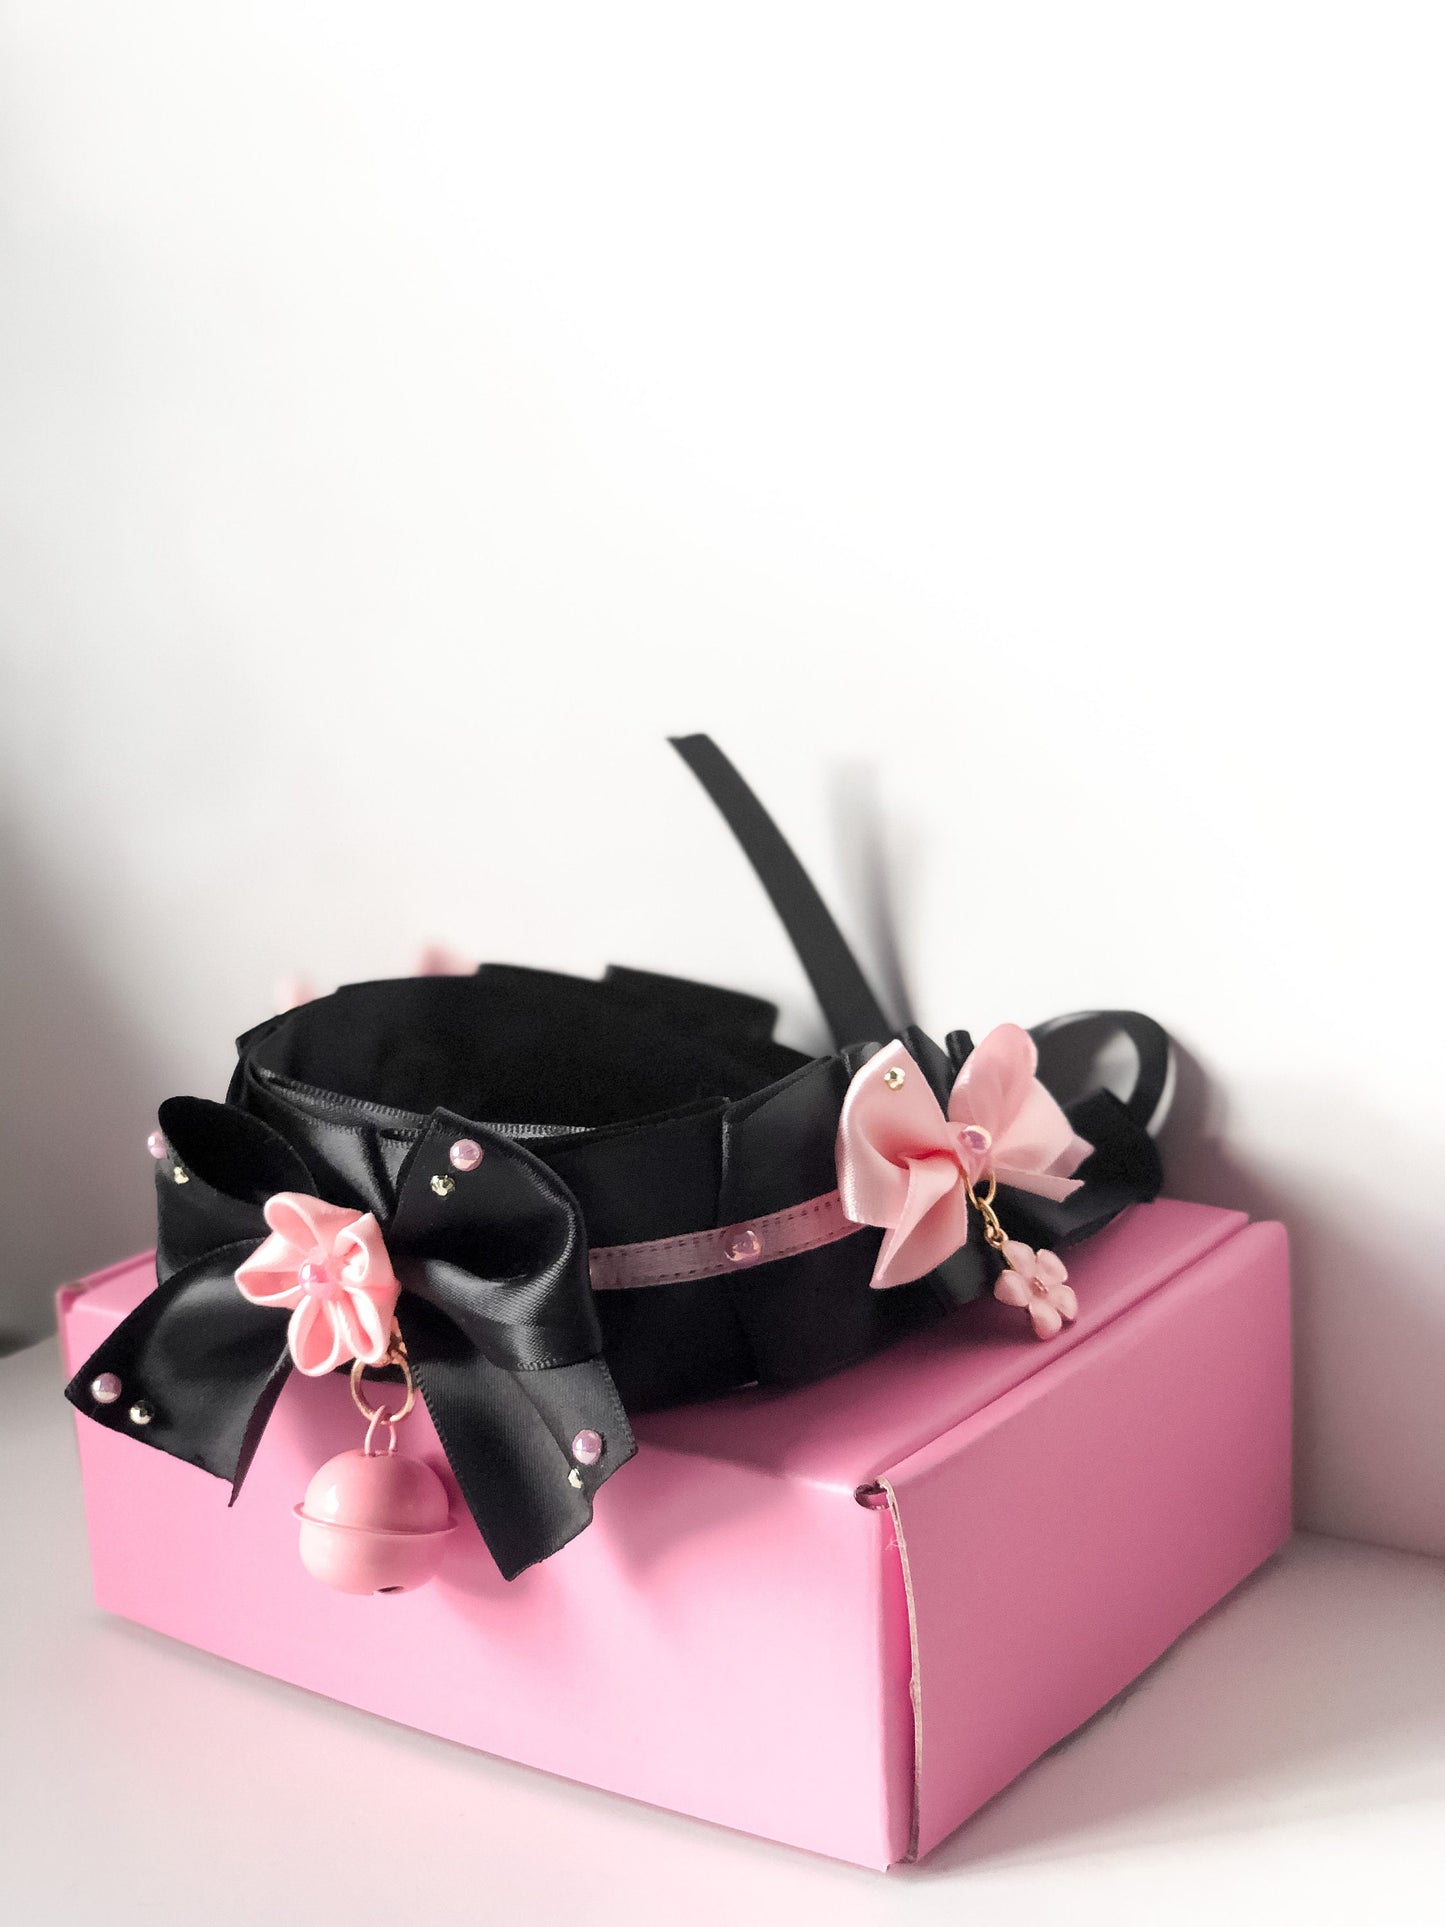 Black and pink sakura 38mm collar